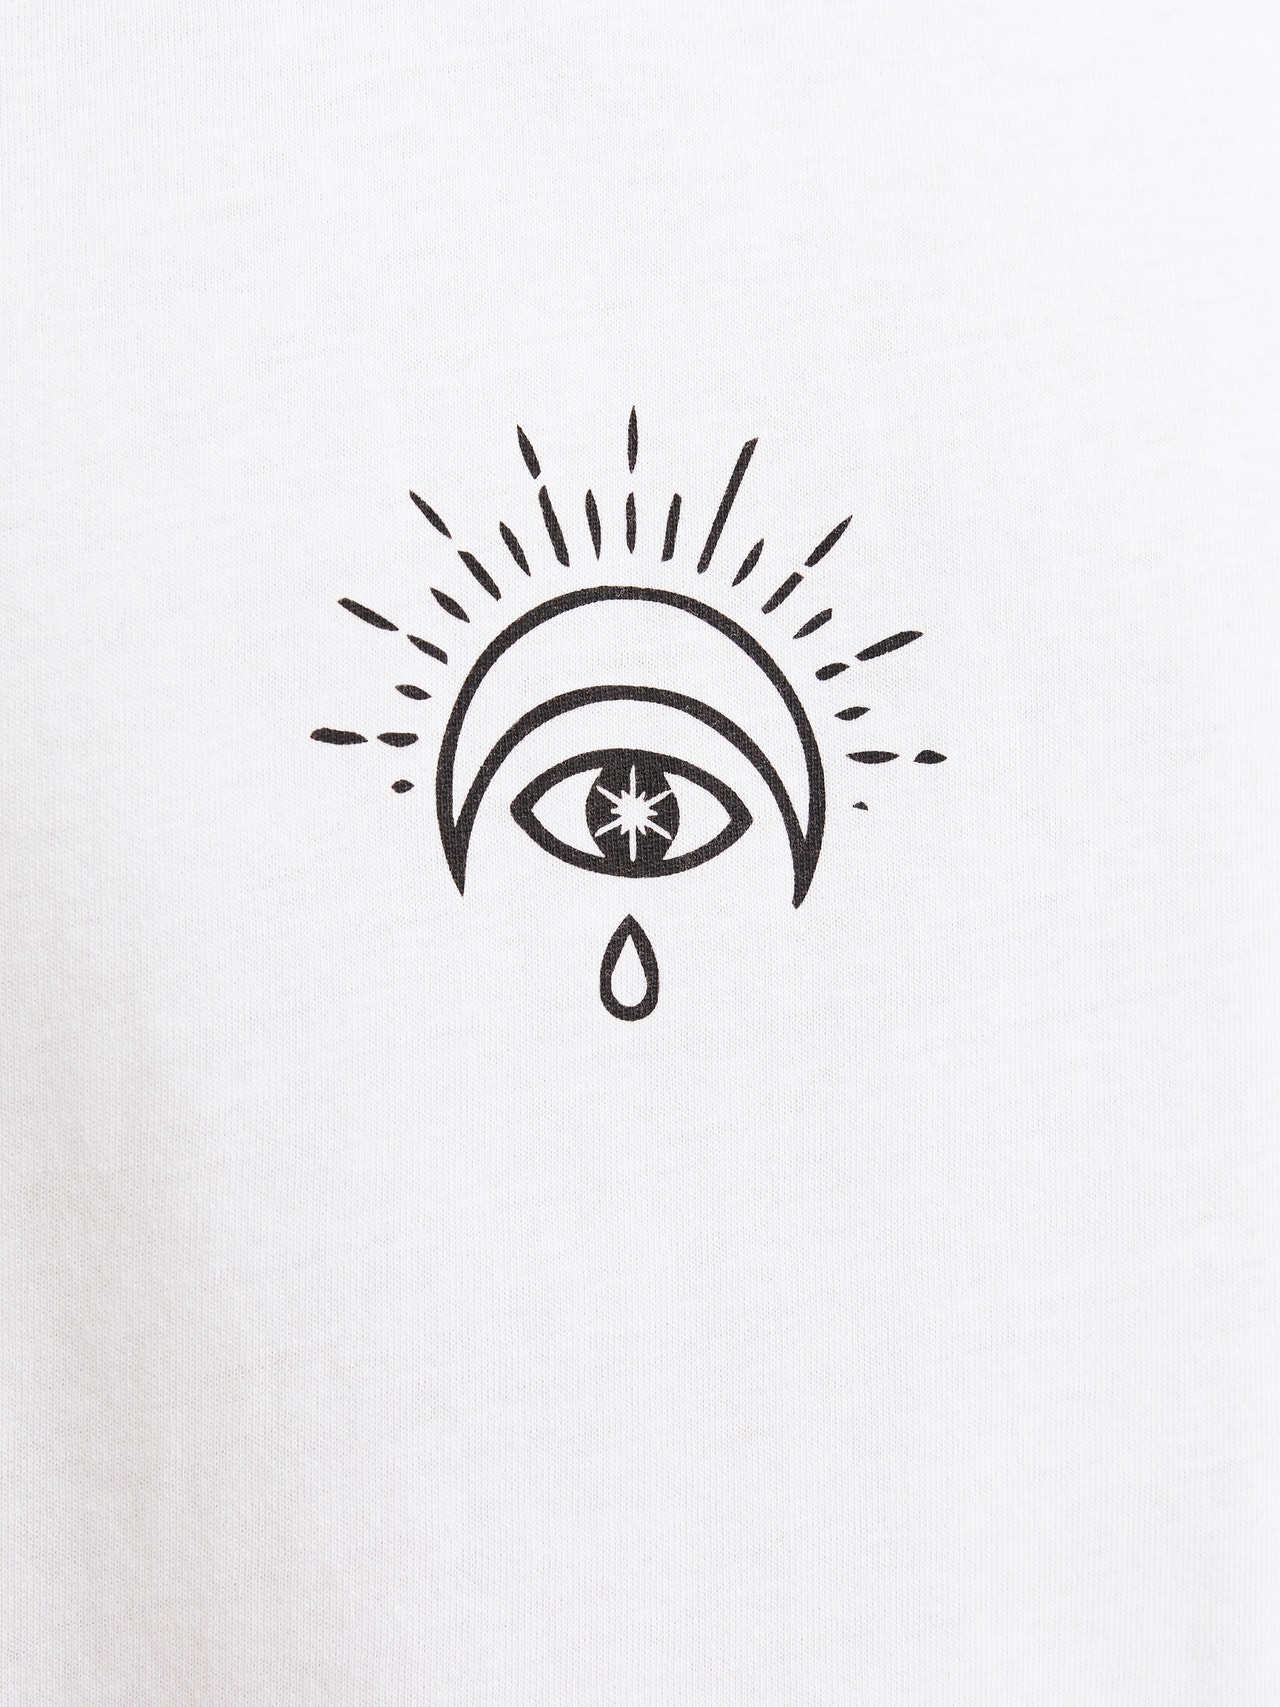 Jack & Jones Printed Round Neck T-shirt -Bright White - 12271980